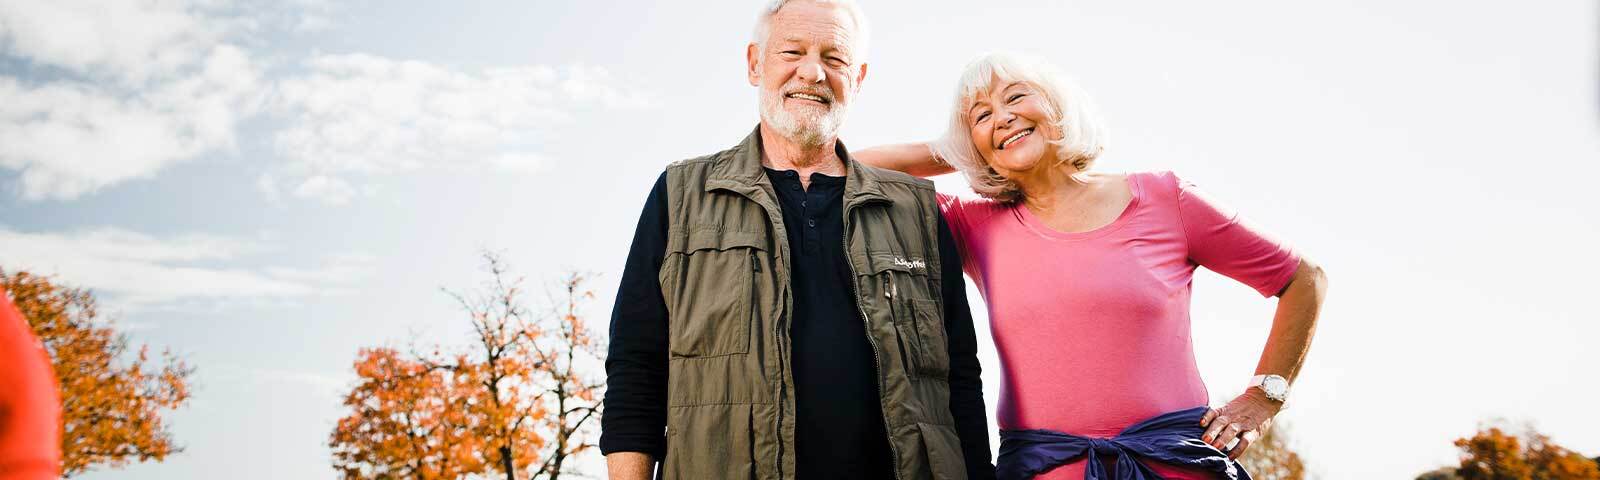 Älteres Ehepaar: Frau mit rosa Shirt und Mann mit Weste